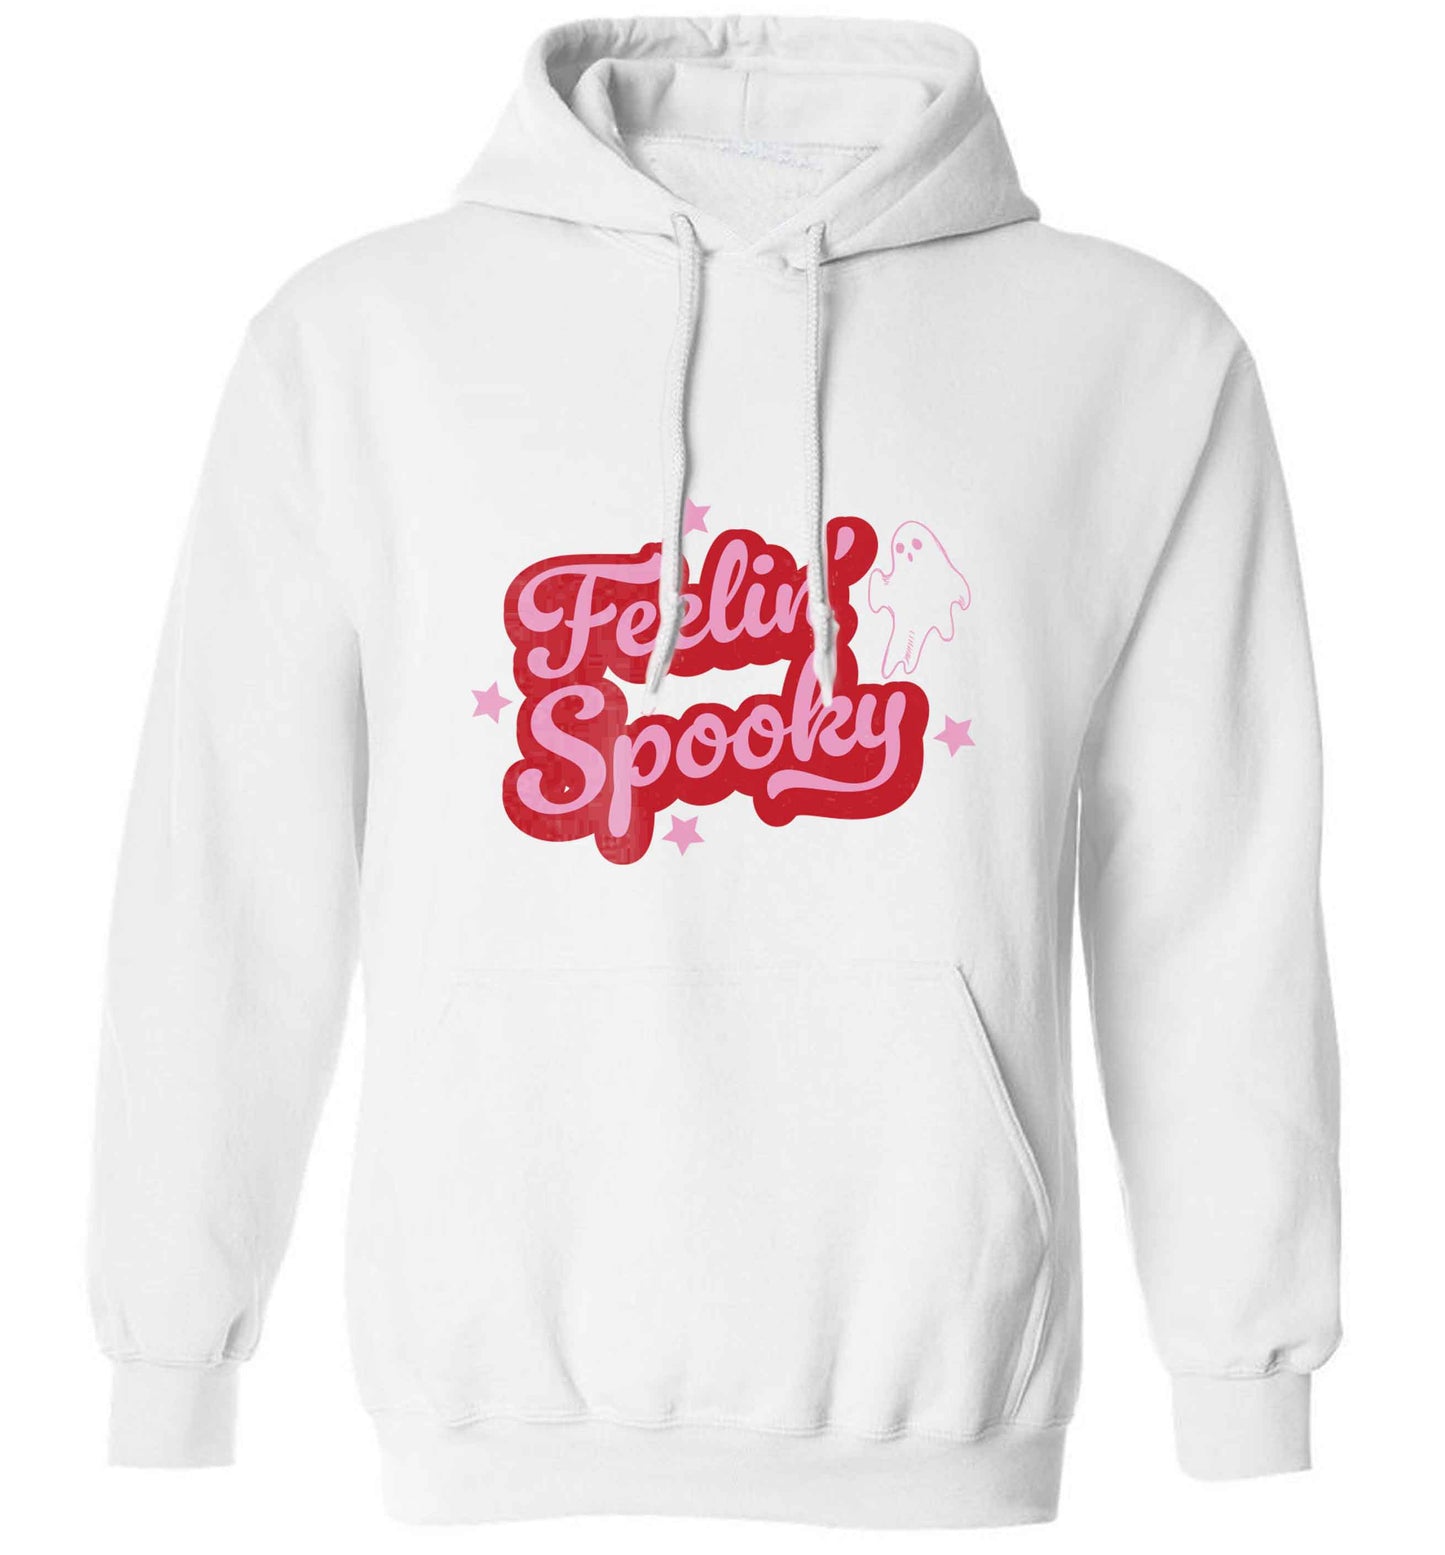 Feelin' Spooky Kit adults unisex white hoodie 2XL